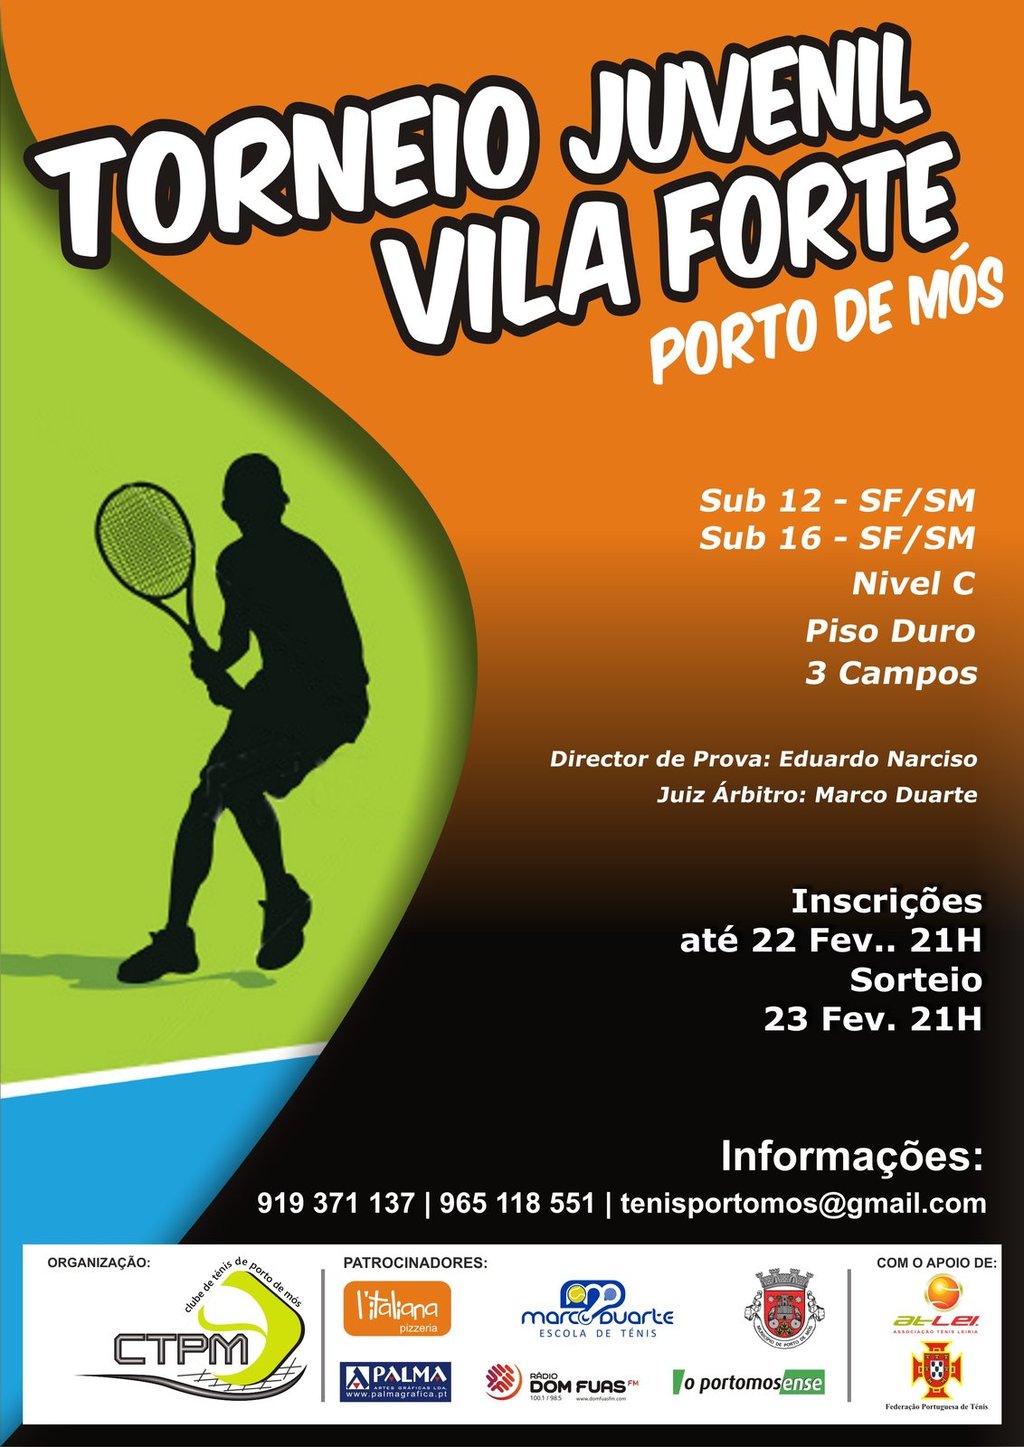 Torneio Juvenil de Tenis Vila Forte